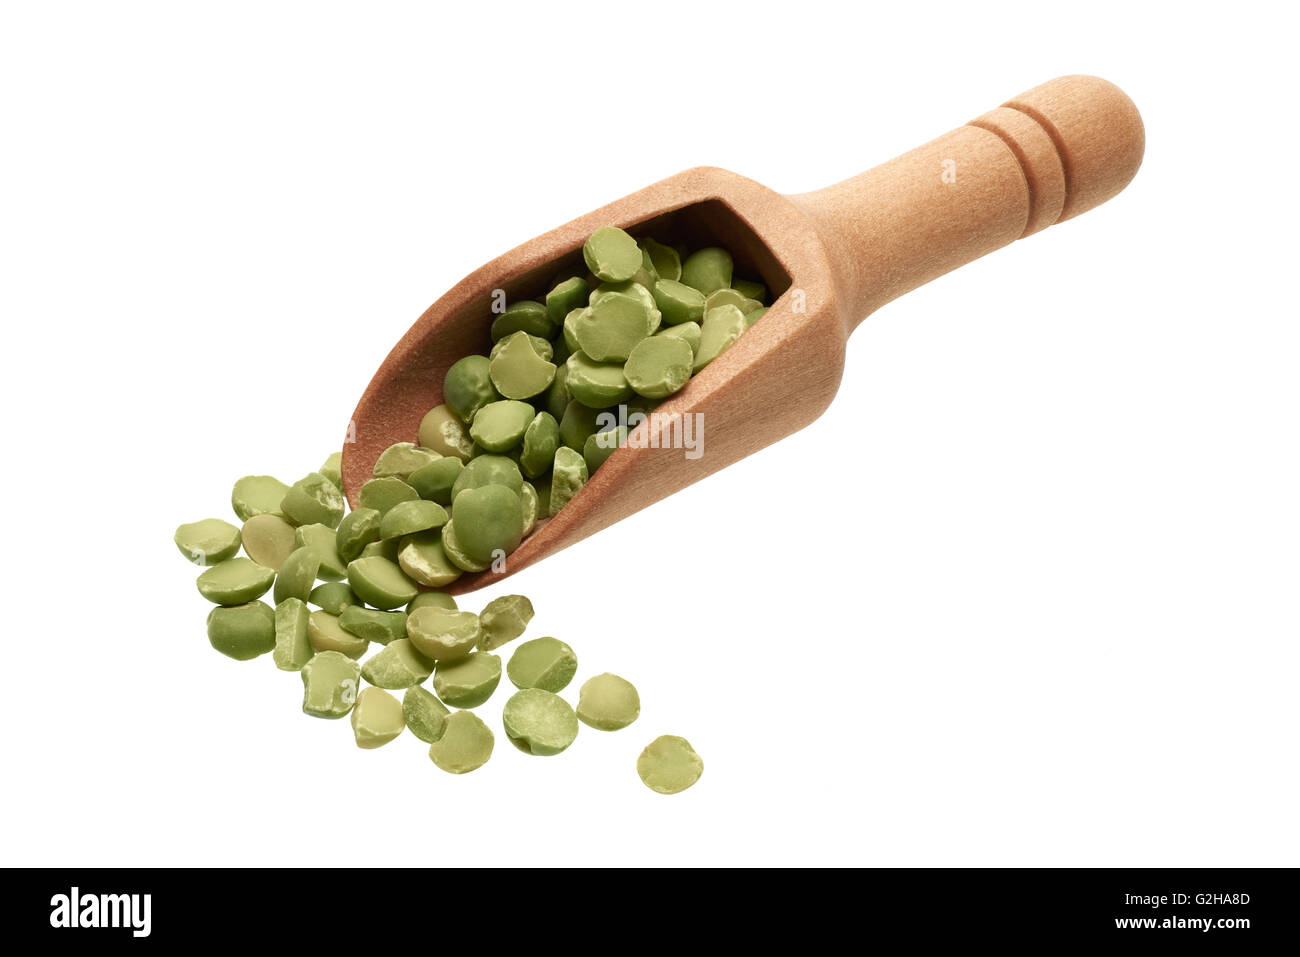 Ingrédients : tas de pois verts séchés dans un scoop en bois, sur fond blanc Banque D'Images